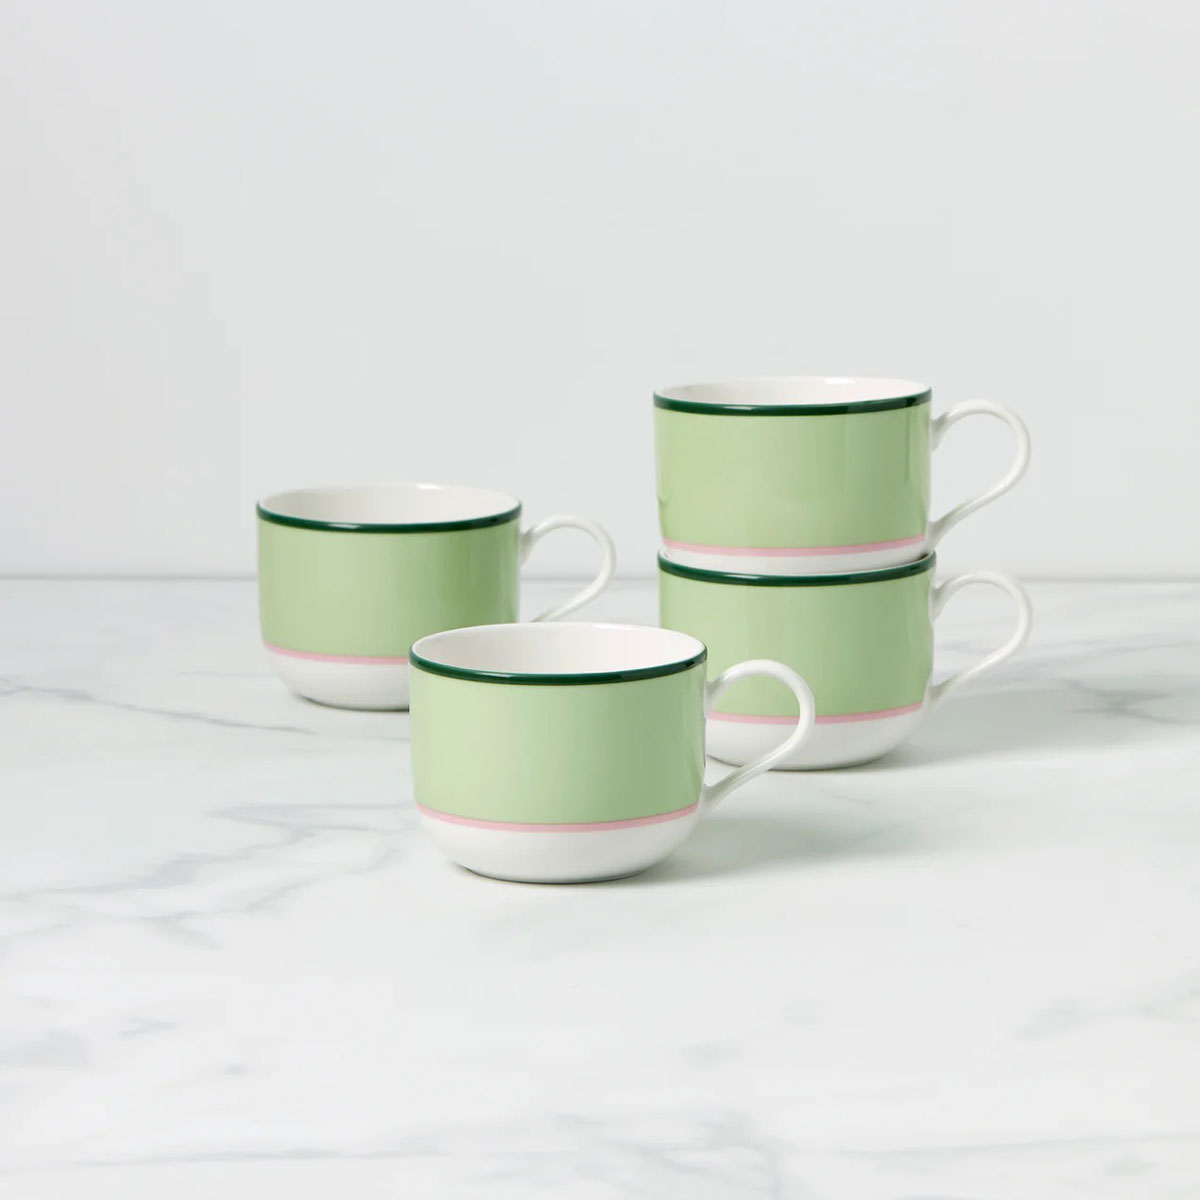 Kate Spade, Lenox Make It Pop Mug Set of 4 Green, Pink